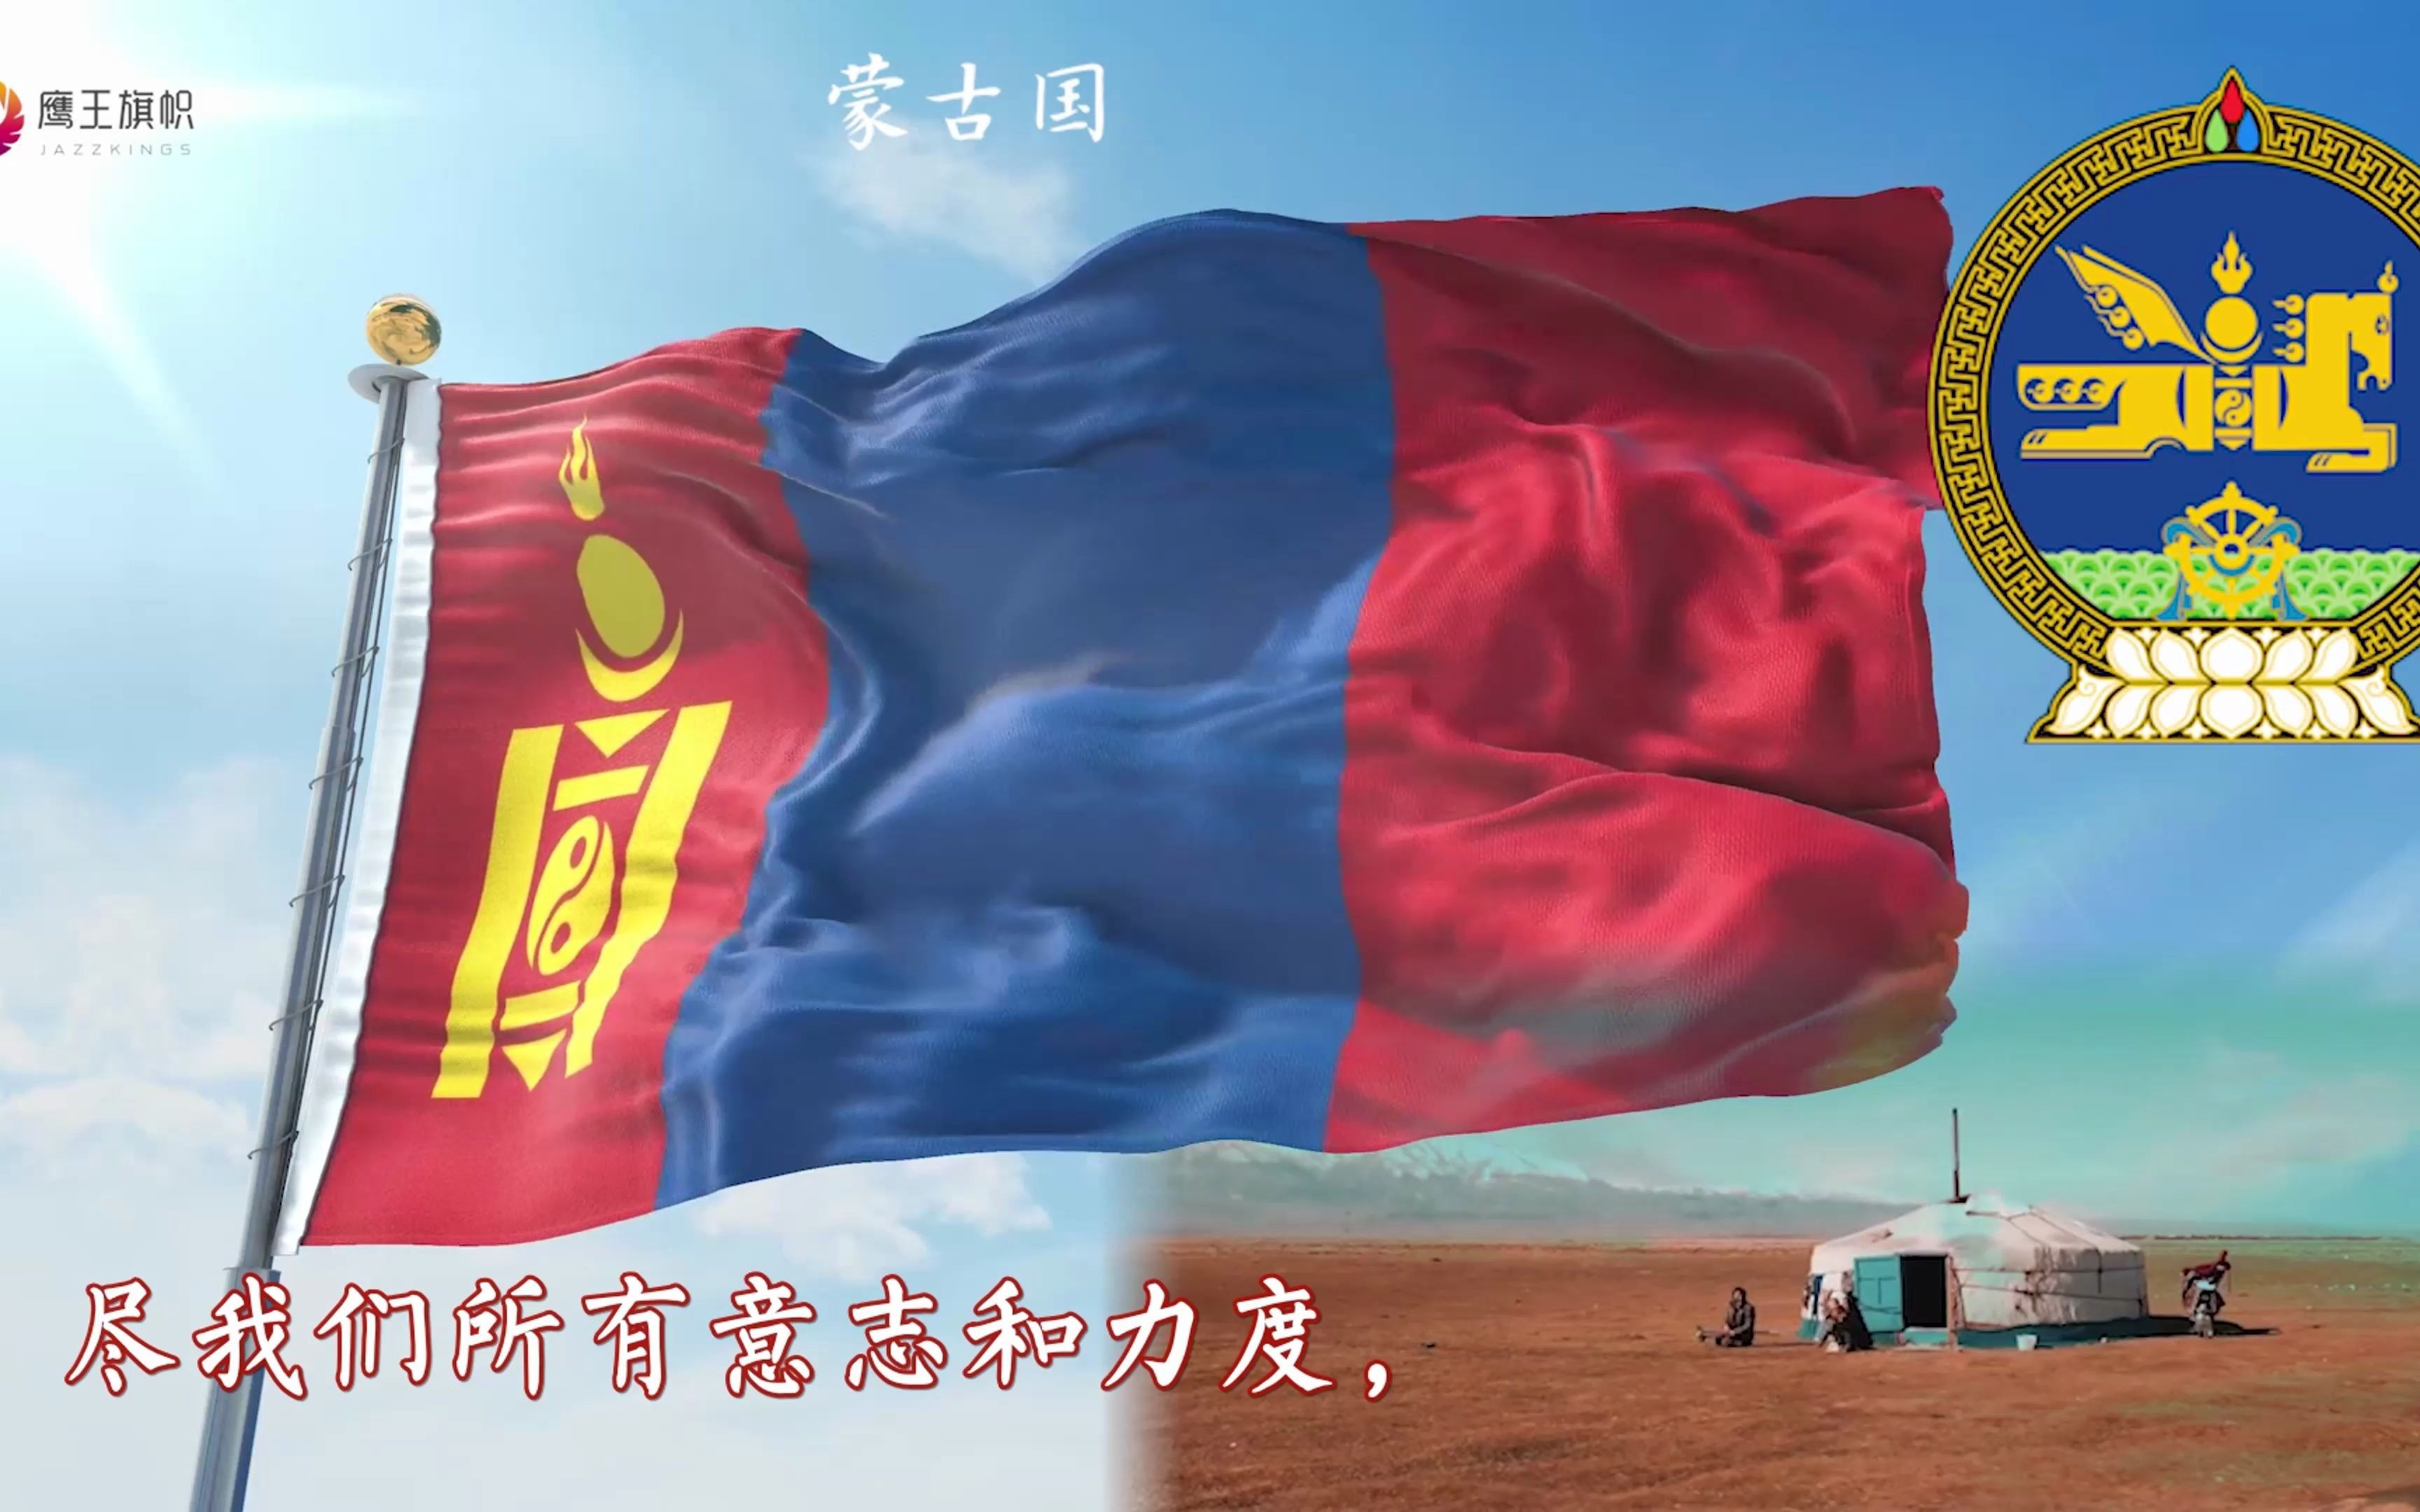 蒙古国旗发展史图片